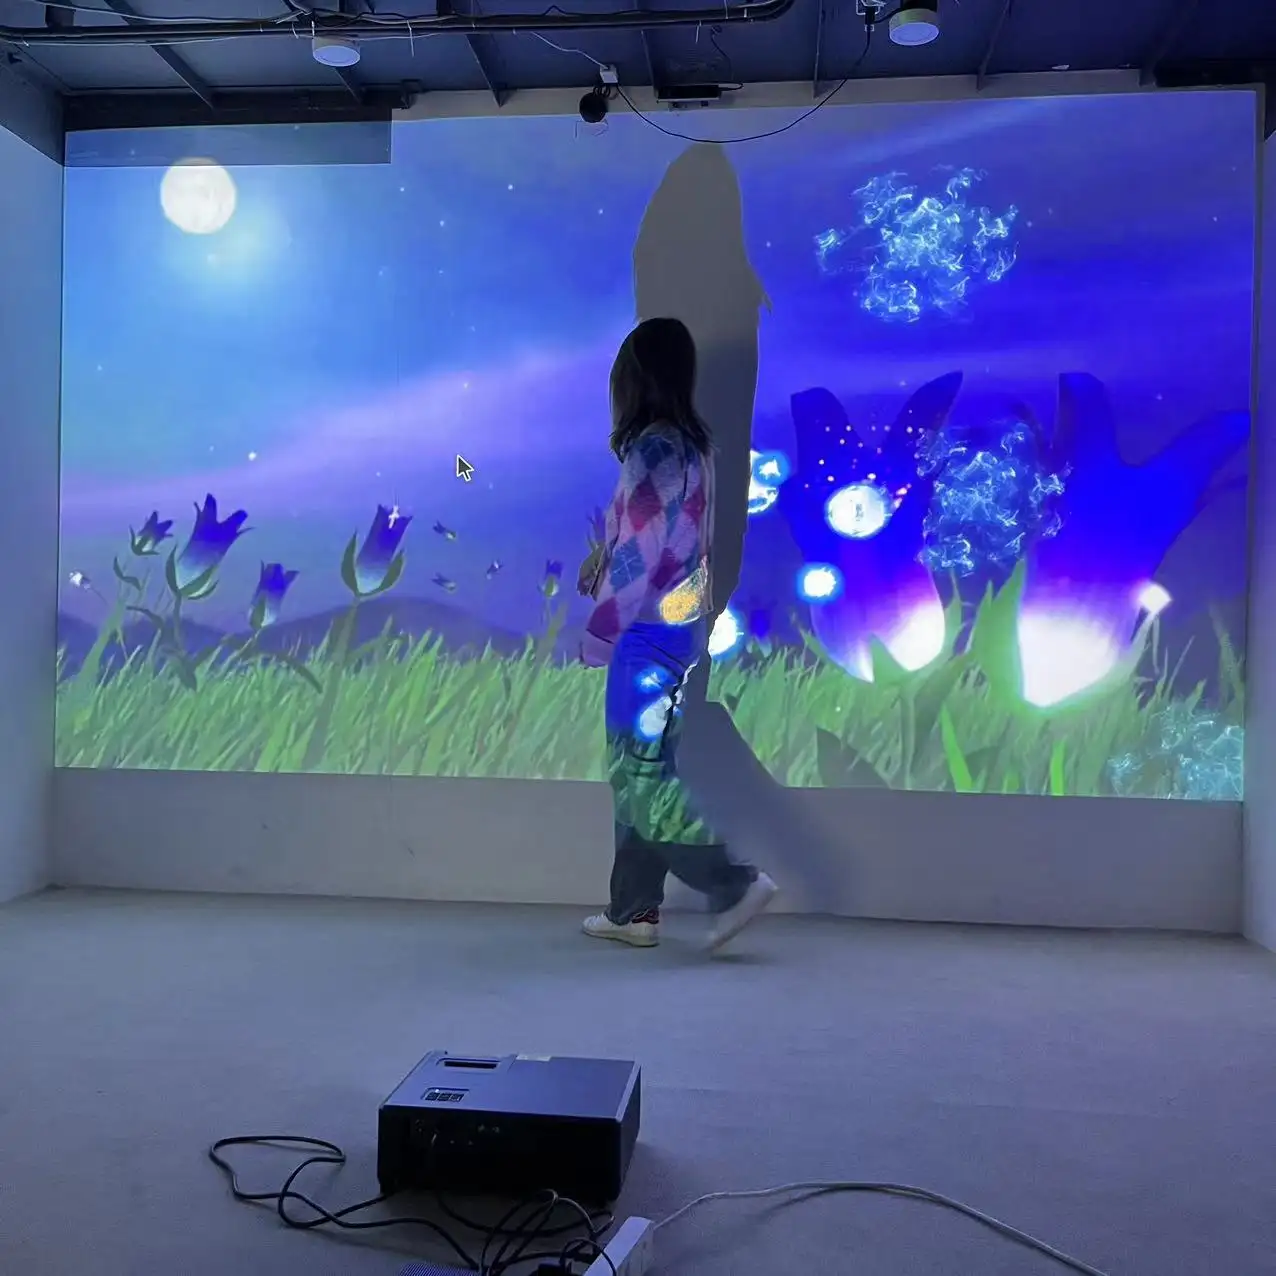 Hot DefiLabs Lumen System UNBEGRENZTE Effekte, interaktive Bodenfliesen Projektion für Kinderspiele, Ausstellung ..